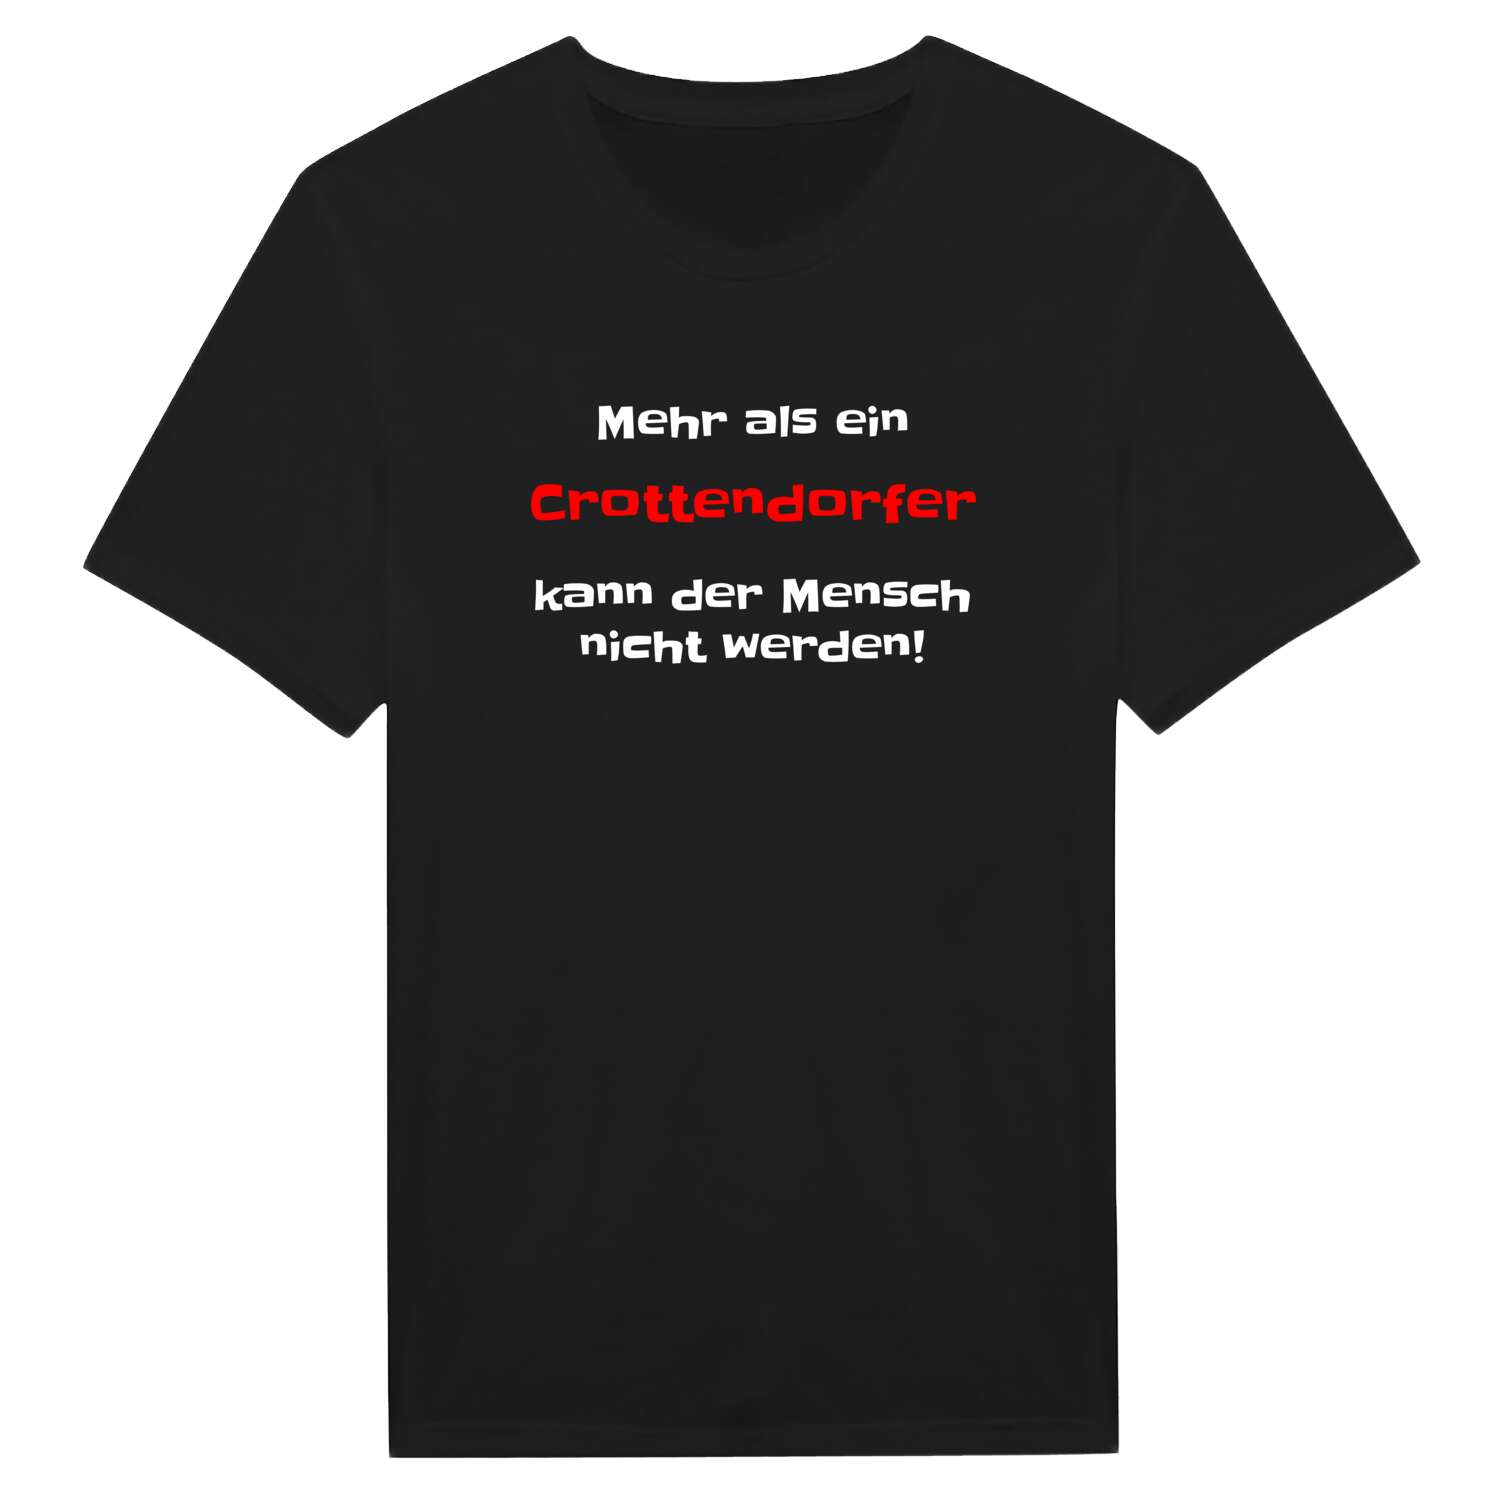 Crottendorf T-Shirt »Mehr als ein«